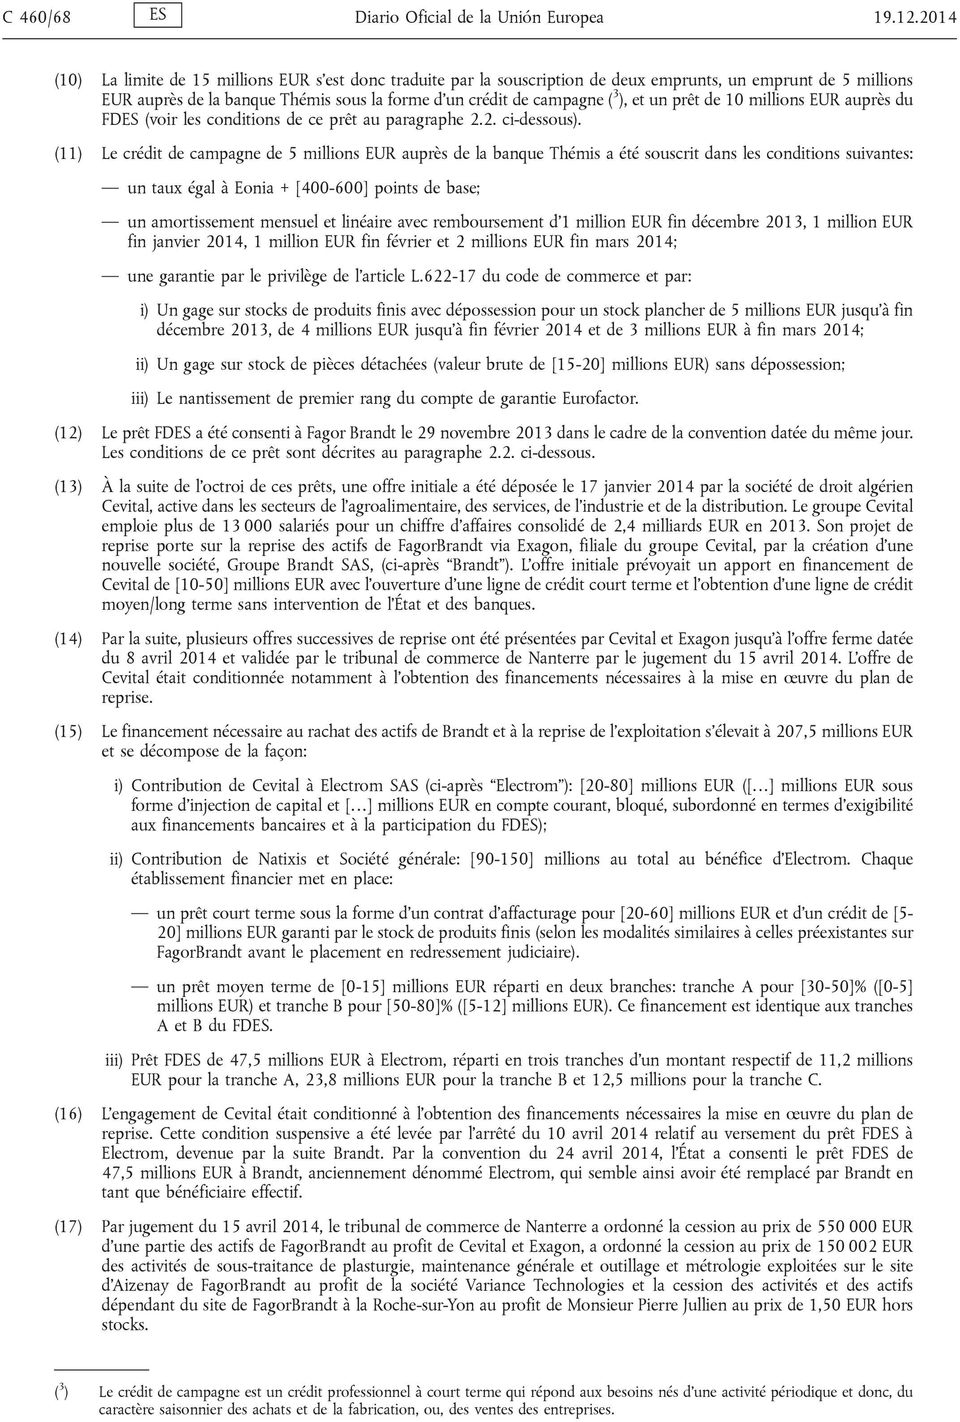 et un prêt de 10 millions EUR auprès du FDES (voir les conditions de ce prêt au paragraphe 2.2. ci-dessous).